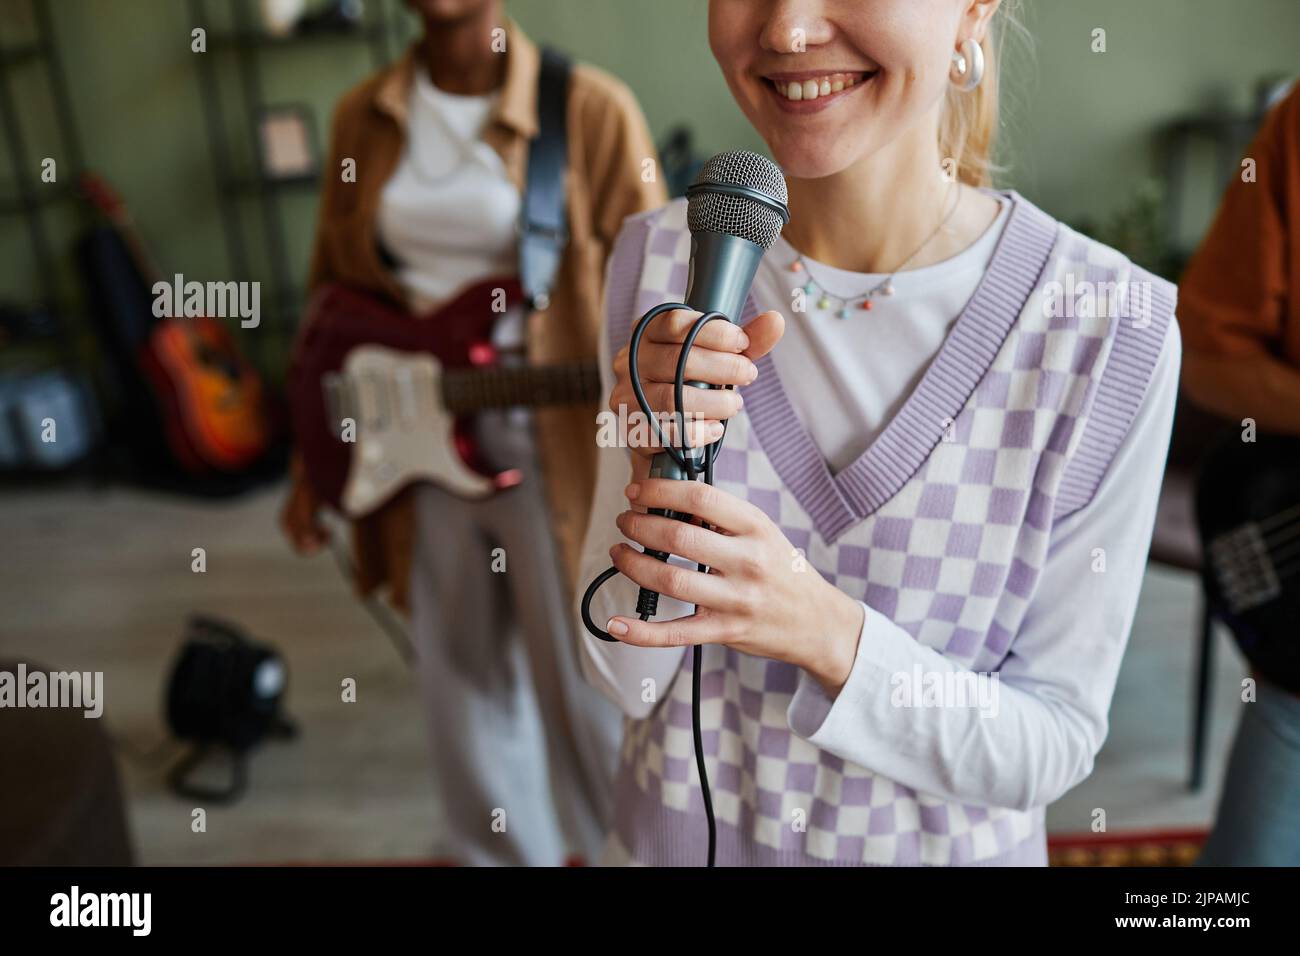 Recortada foto de una joven sonriente sosteniendo el micrófono mientras canta con la banda de música, espacio de copia Foto de stock